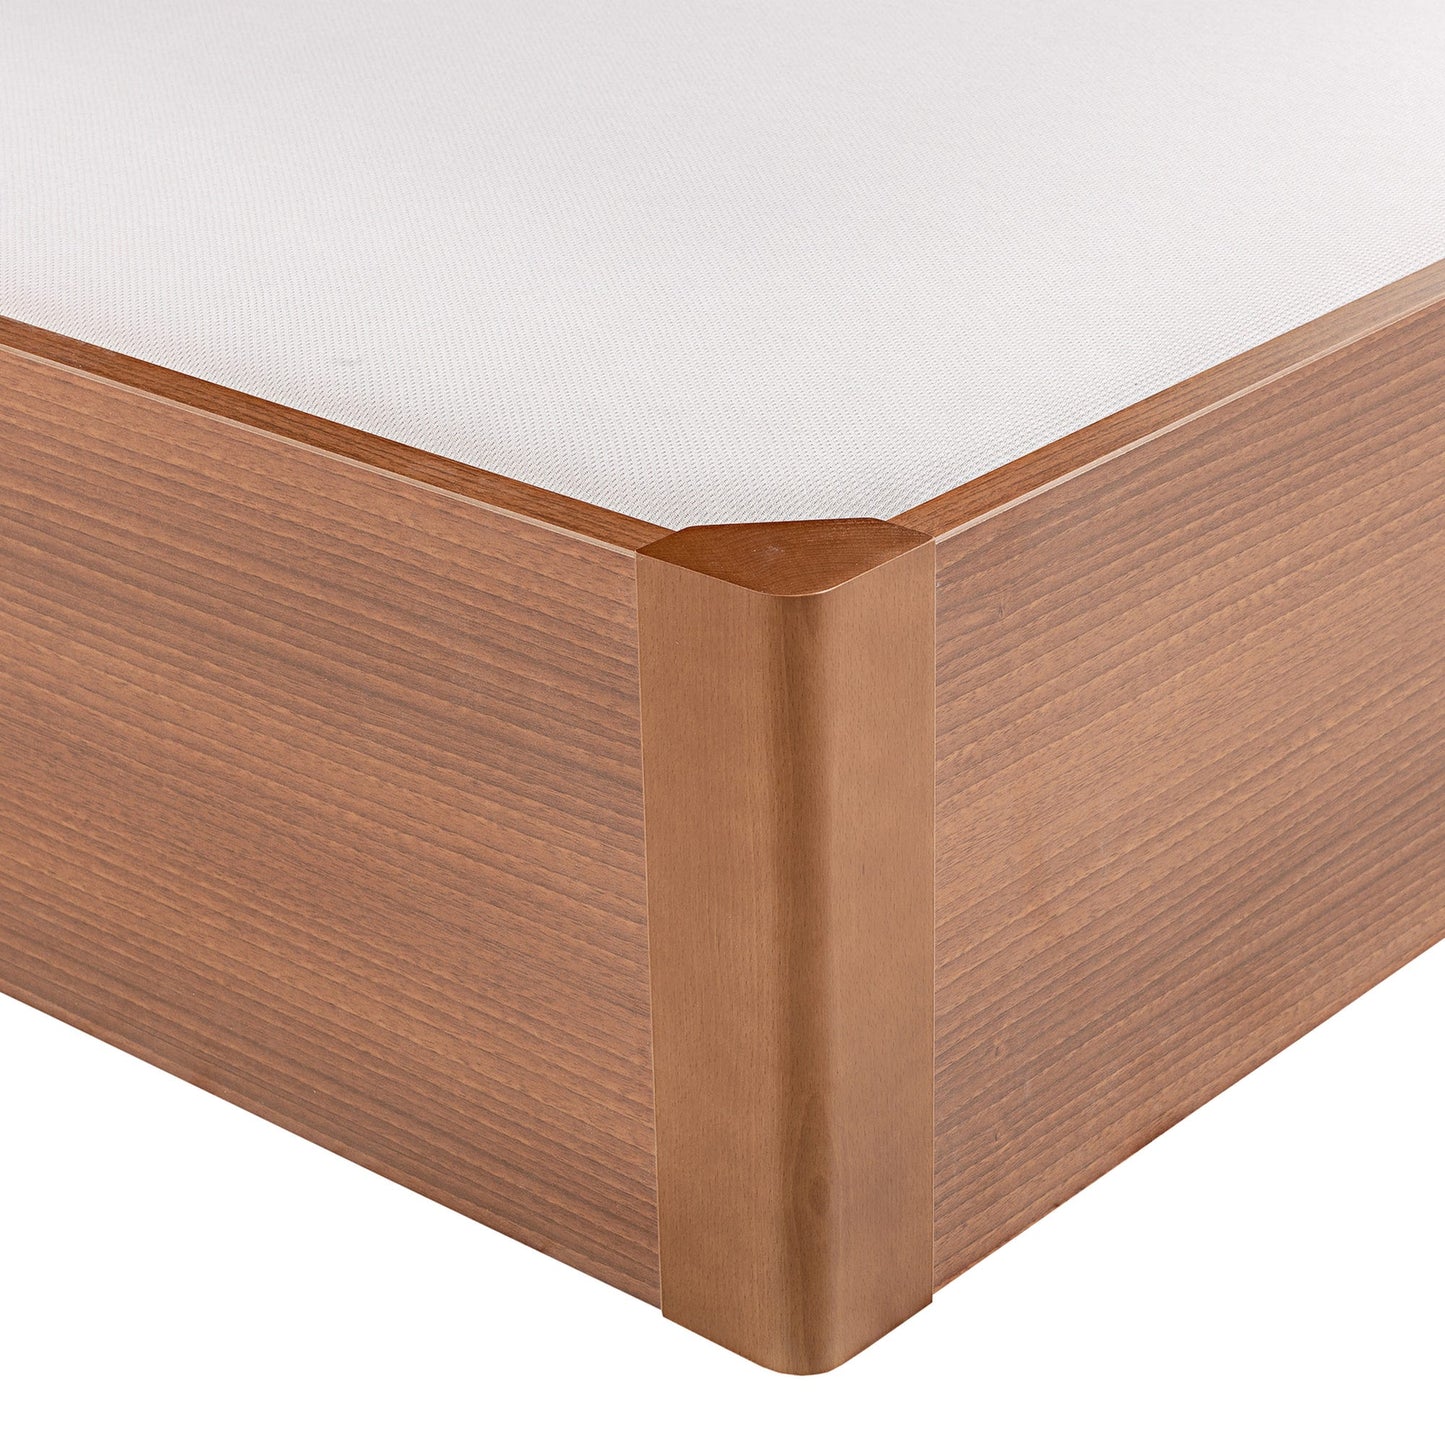 Canapé abatible de madera tapa única de color cerezo - DESIGN - 160x182